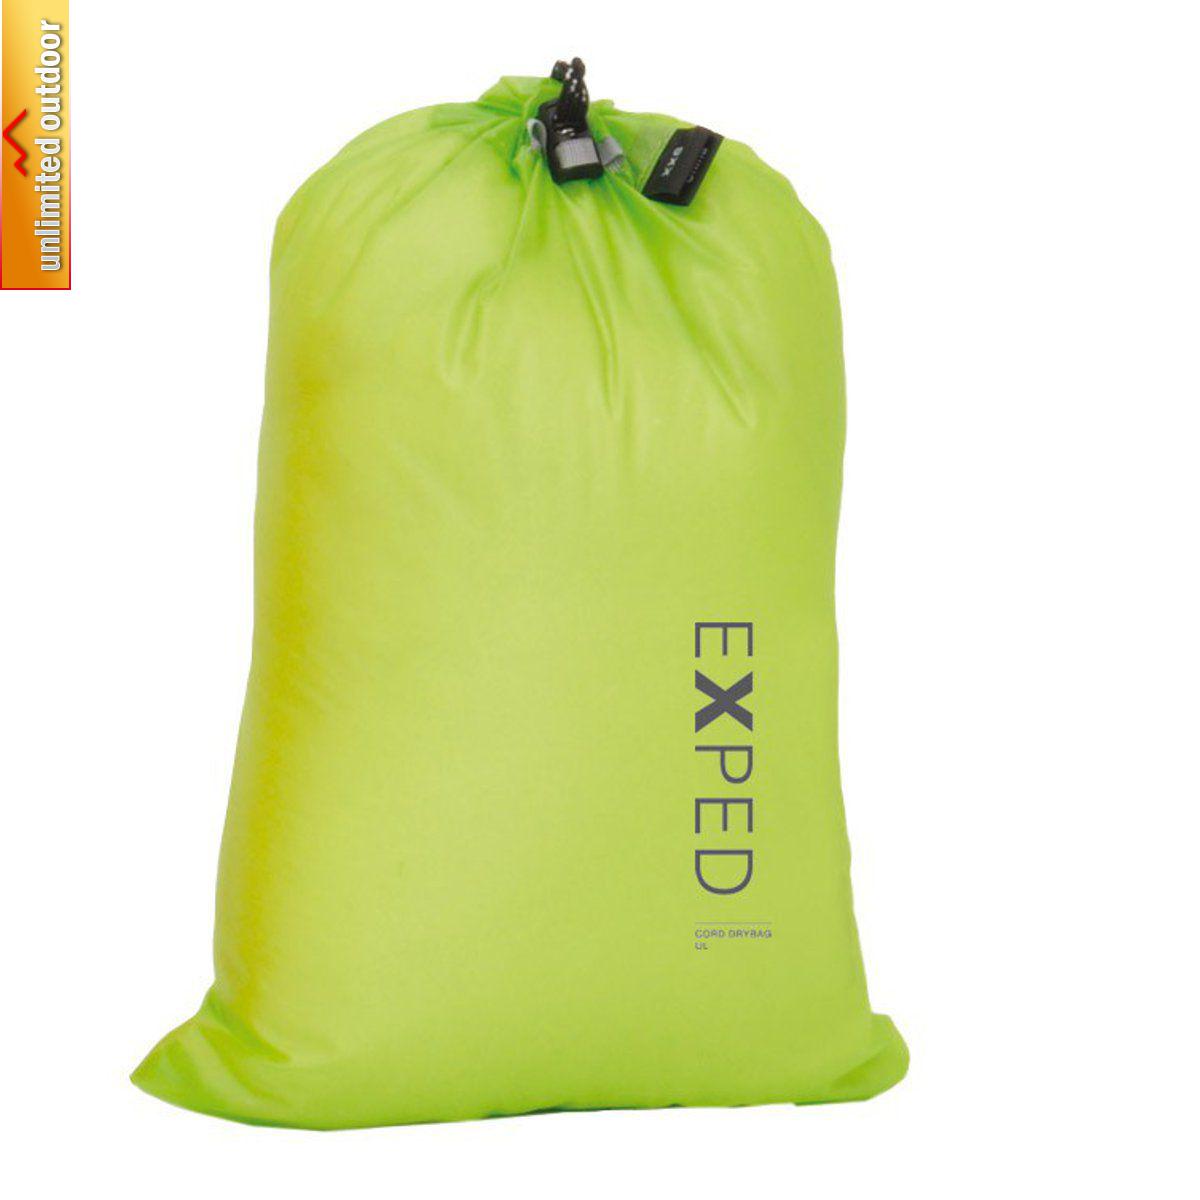 Exped - Гермочехол туристический Cord-Drybag UL